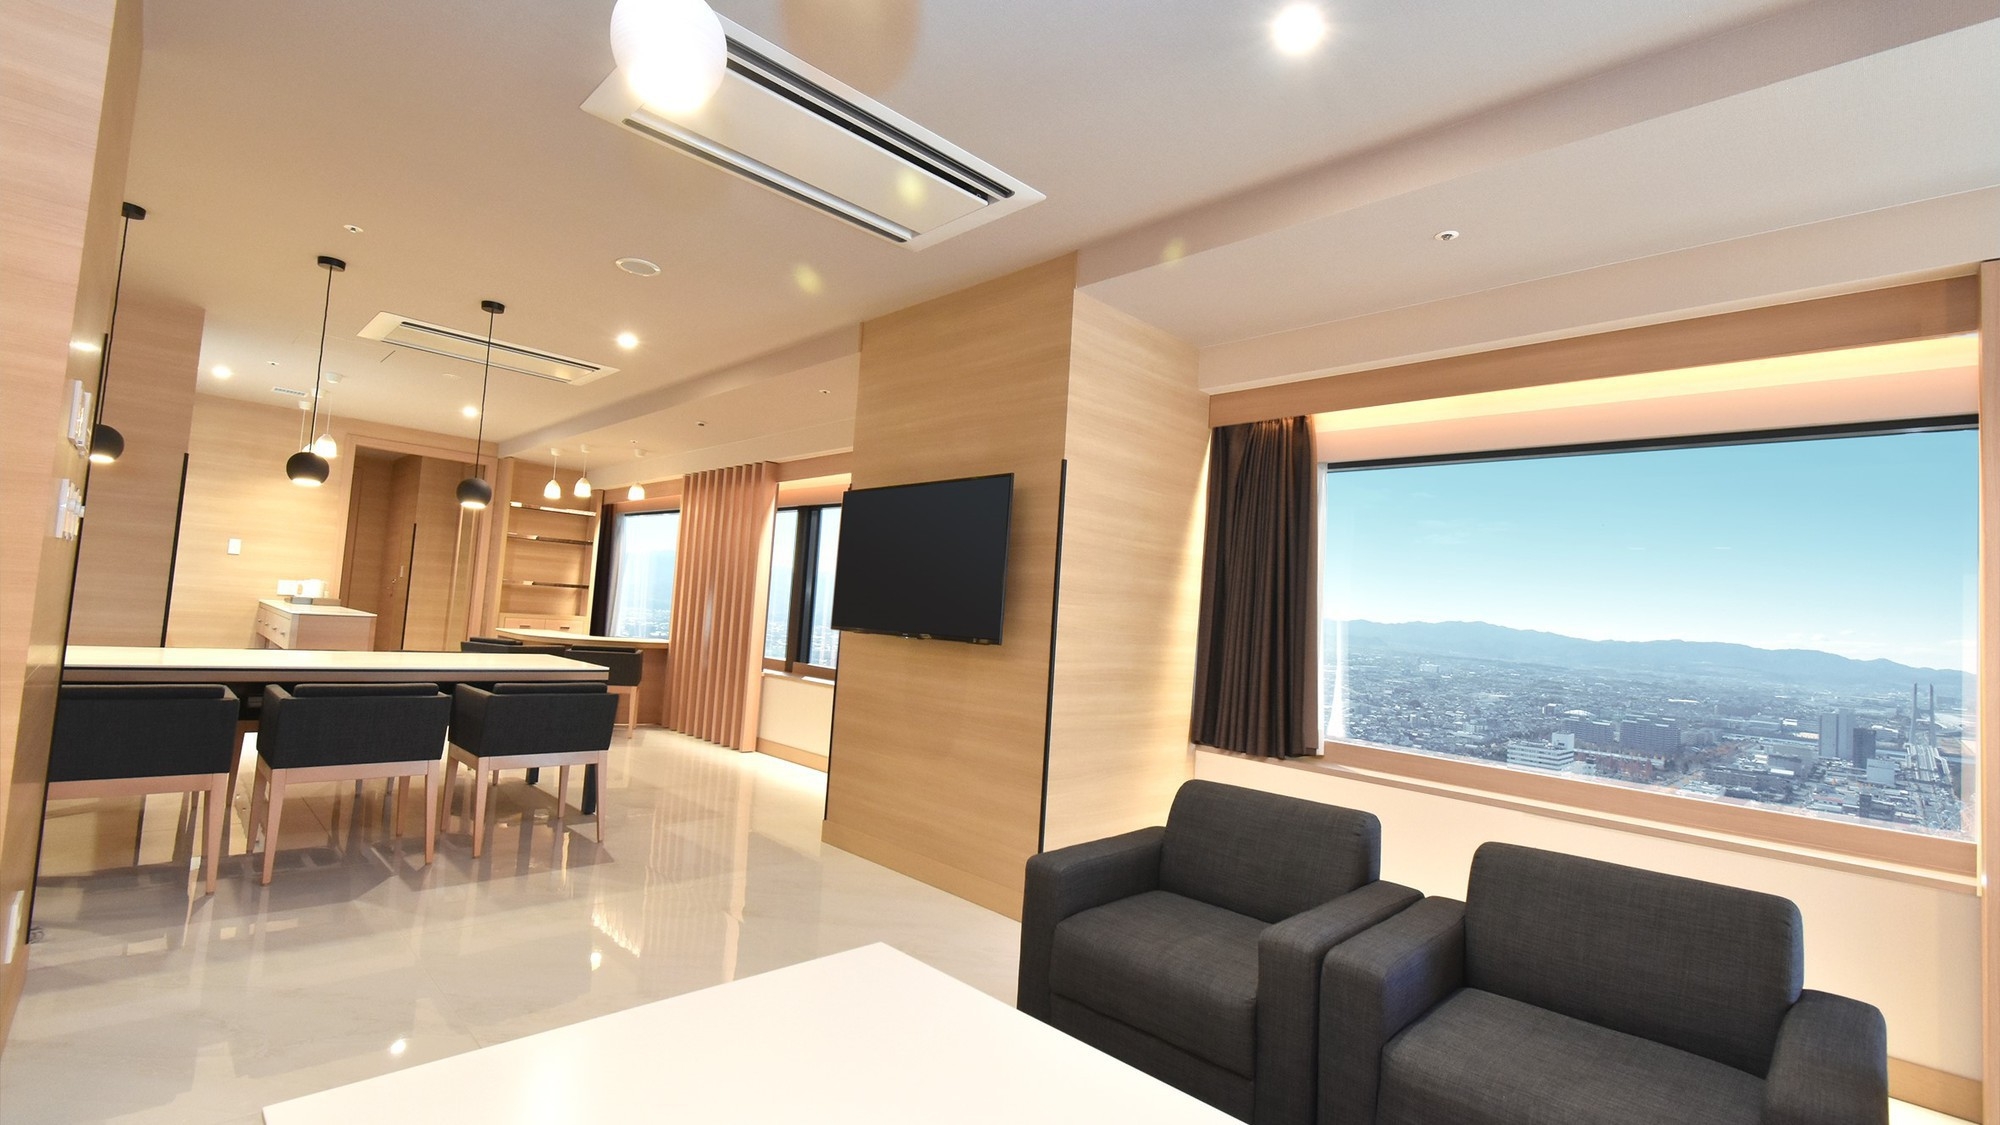 【odysis suite】ビューバスと海・空を見渡せる客室でワンランク上のホテルステイを【朝食付】